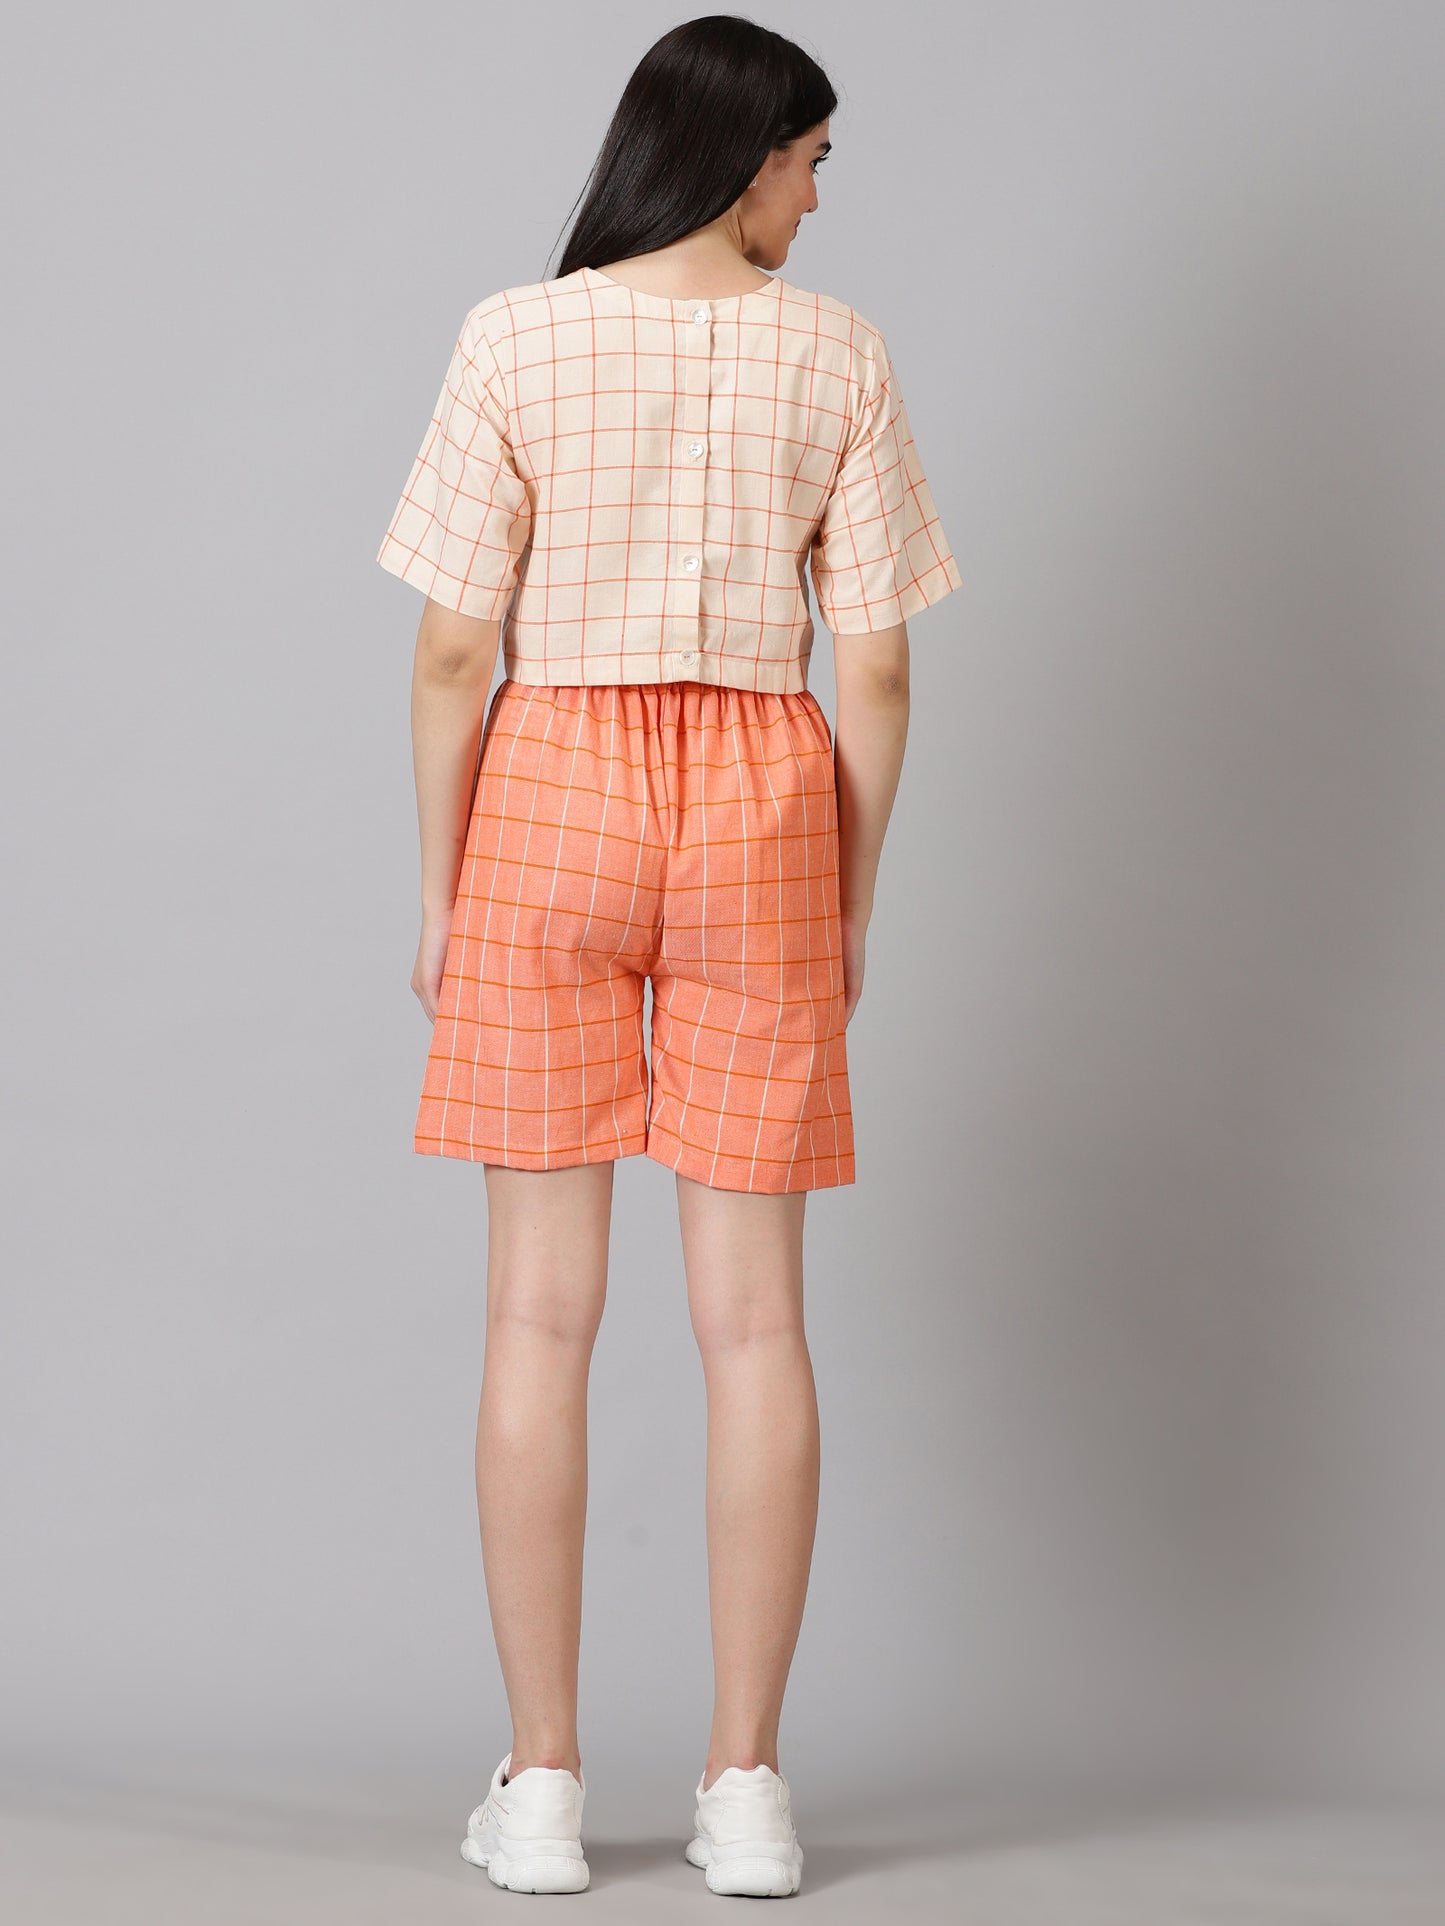 Peach Checks Cotton Crop Top & Shorts